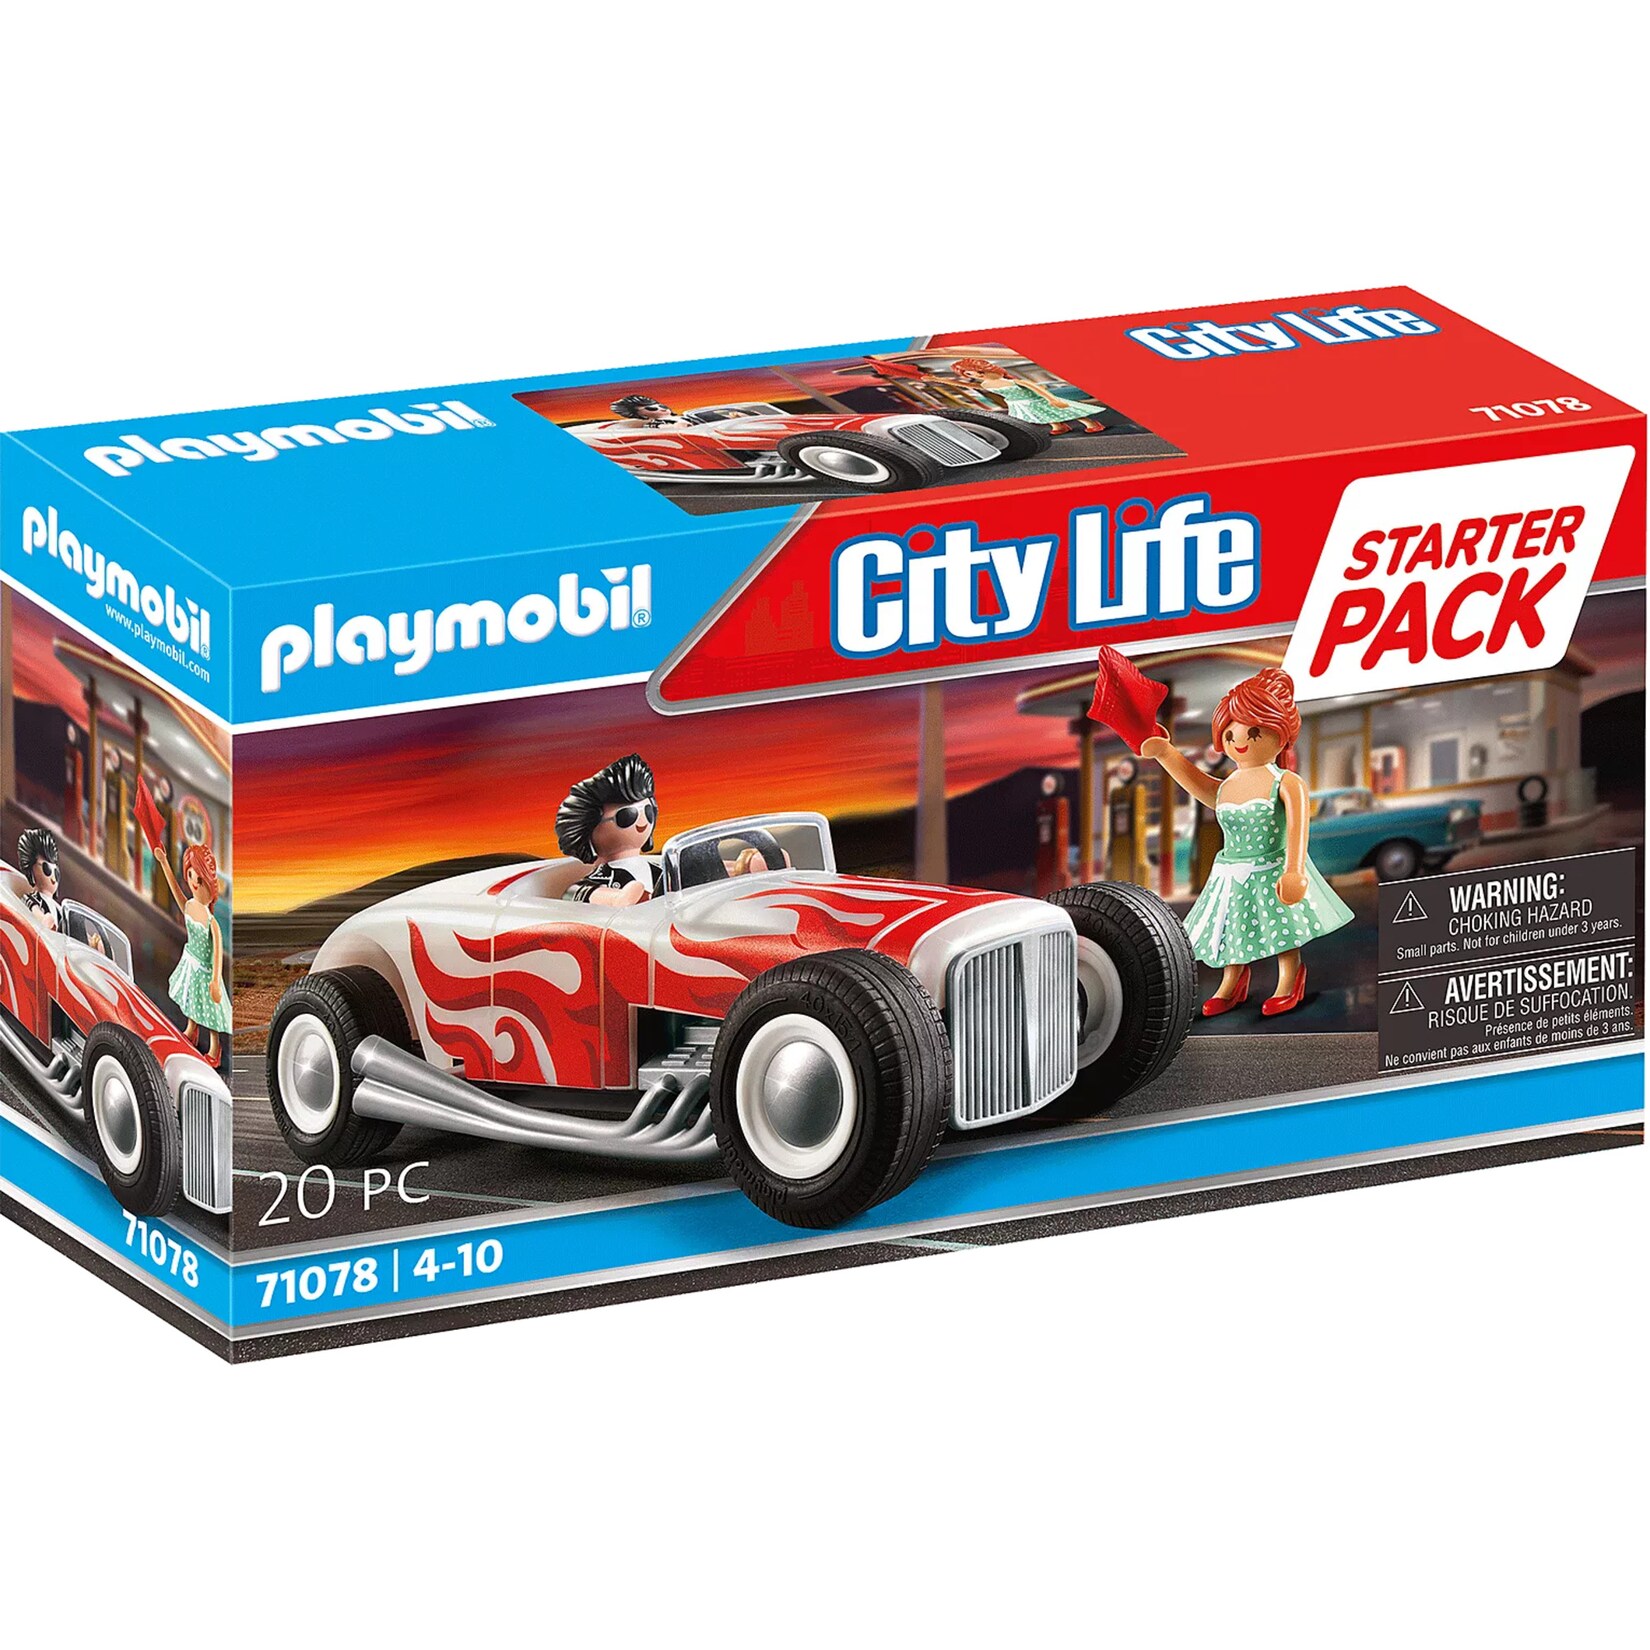 PLAYMOBIL Konstruktionsspielzeug City Life Starter Pack Hot Rod